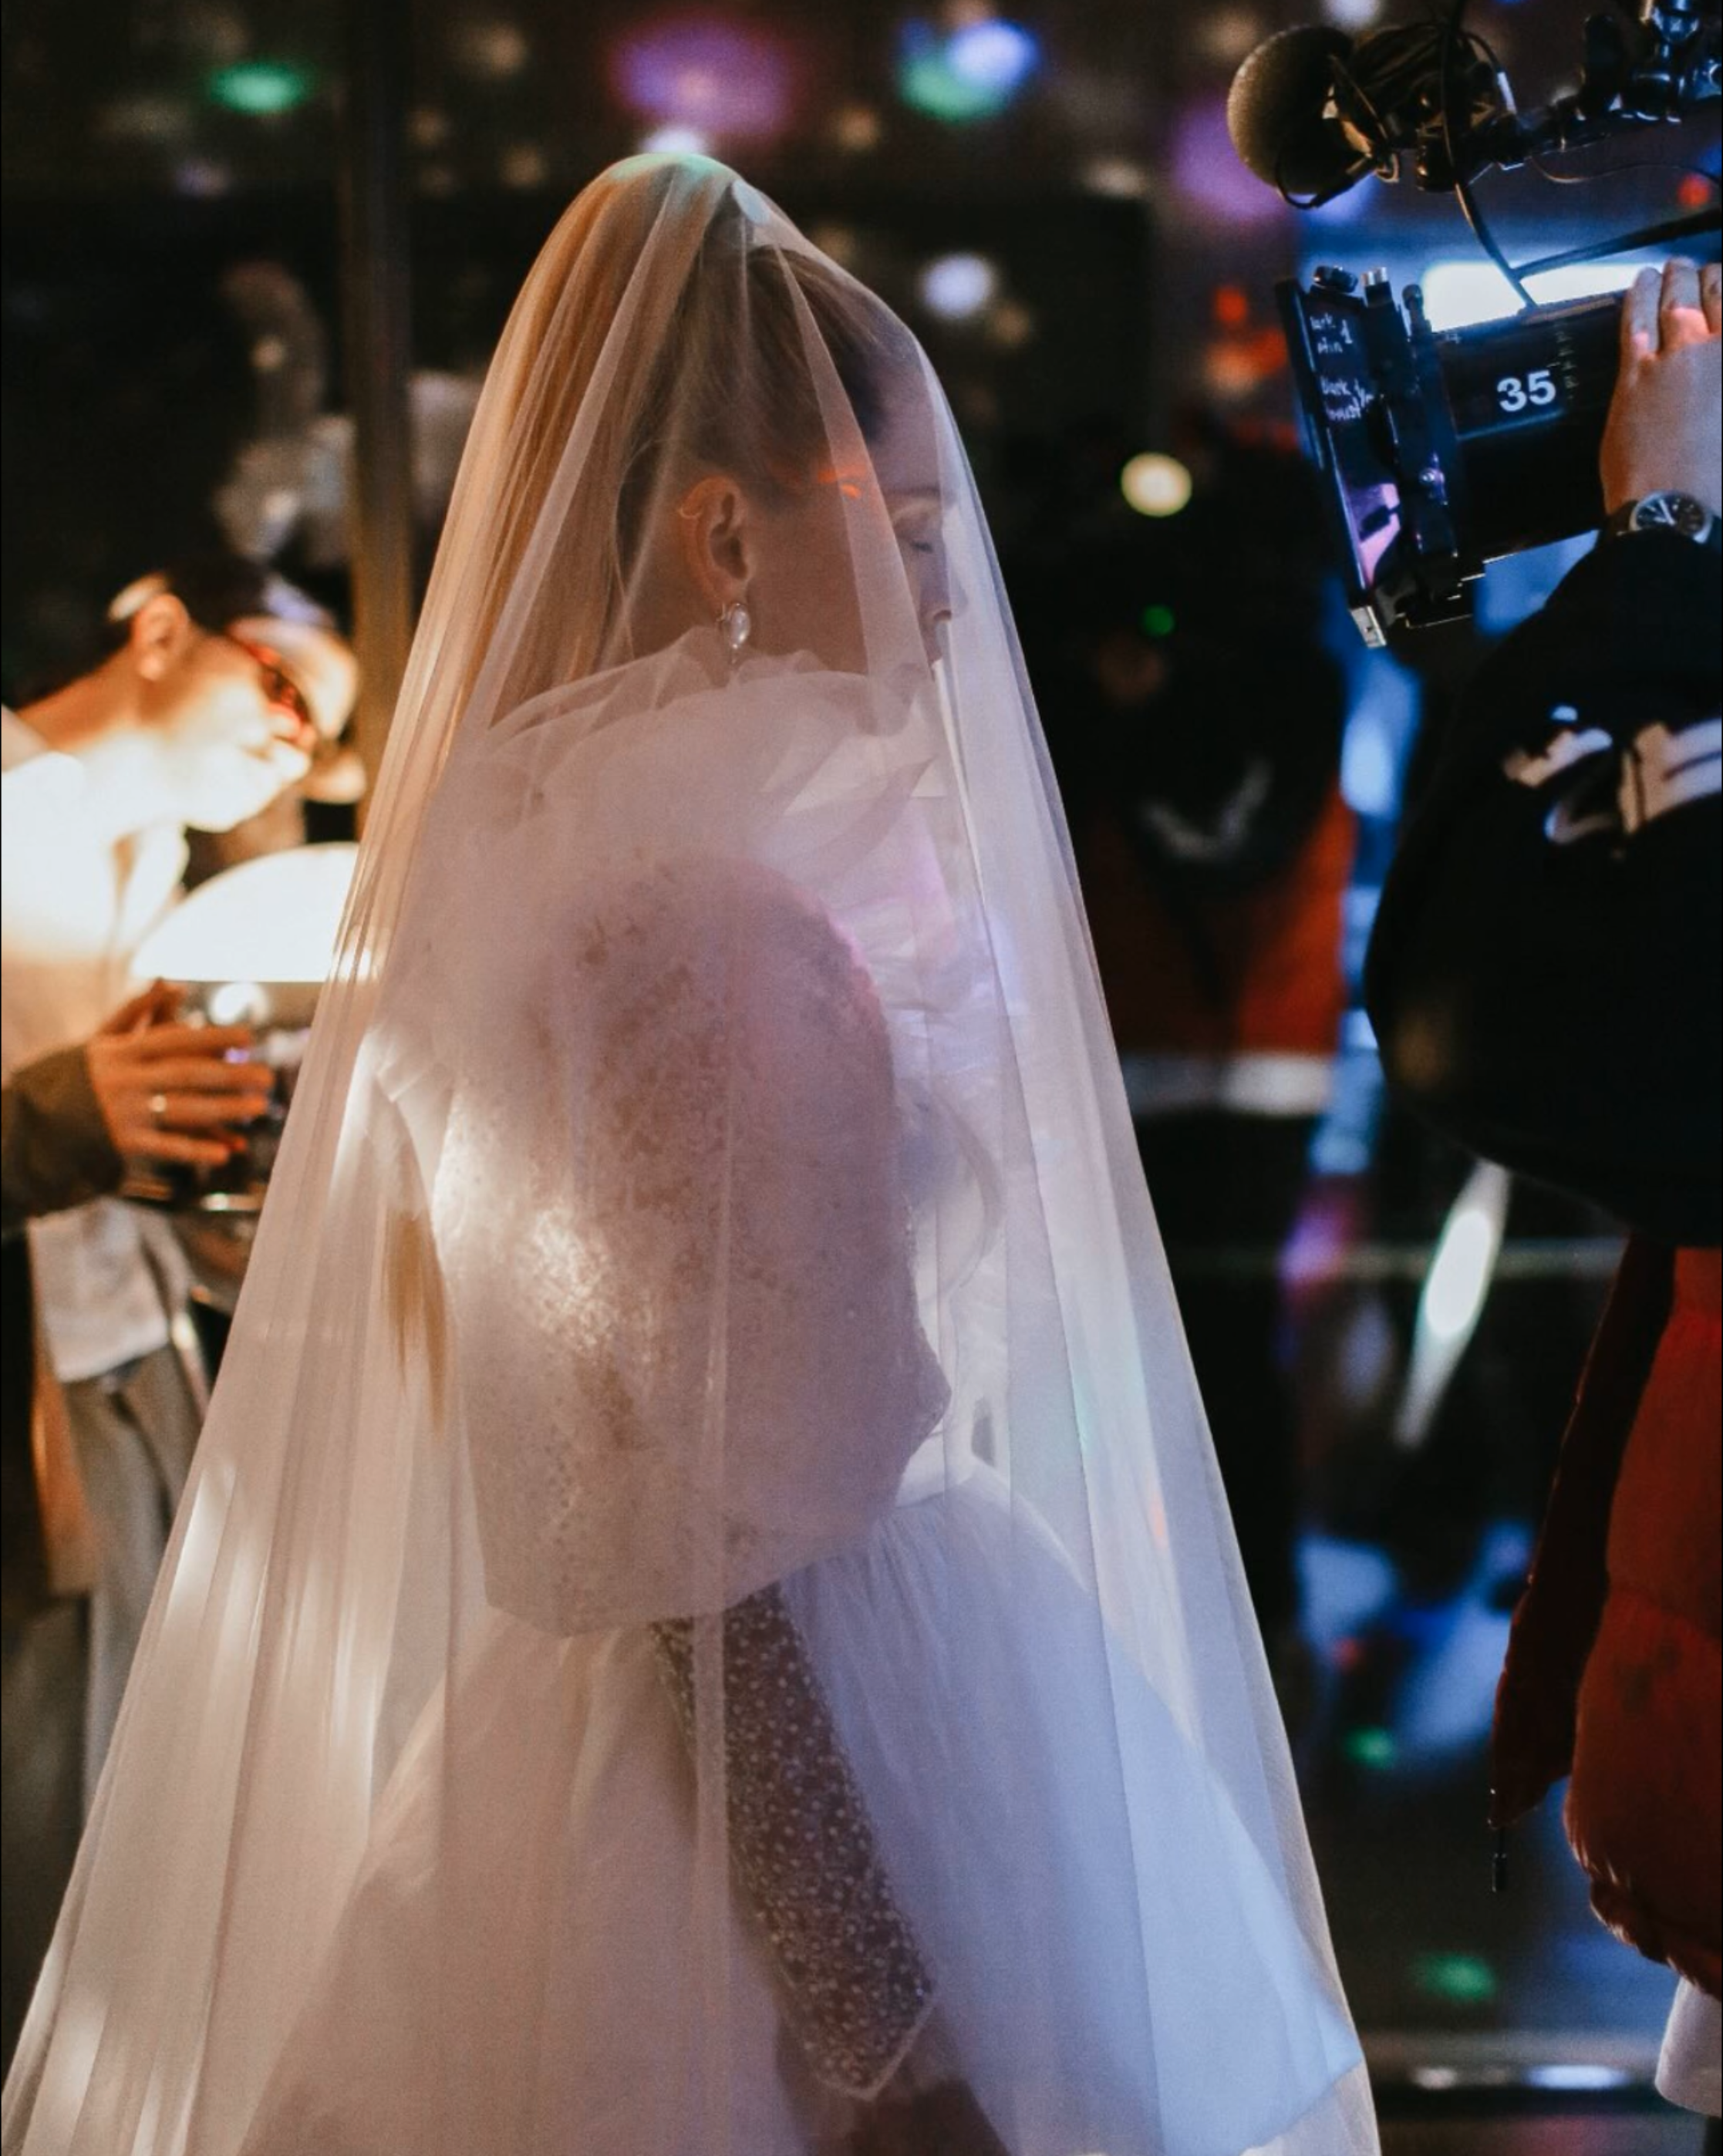 Віра Брежнєва показалась у весільній сукні та фаті, перебуваючи в Іспанії. Фото з Instagram @ververa